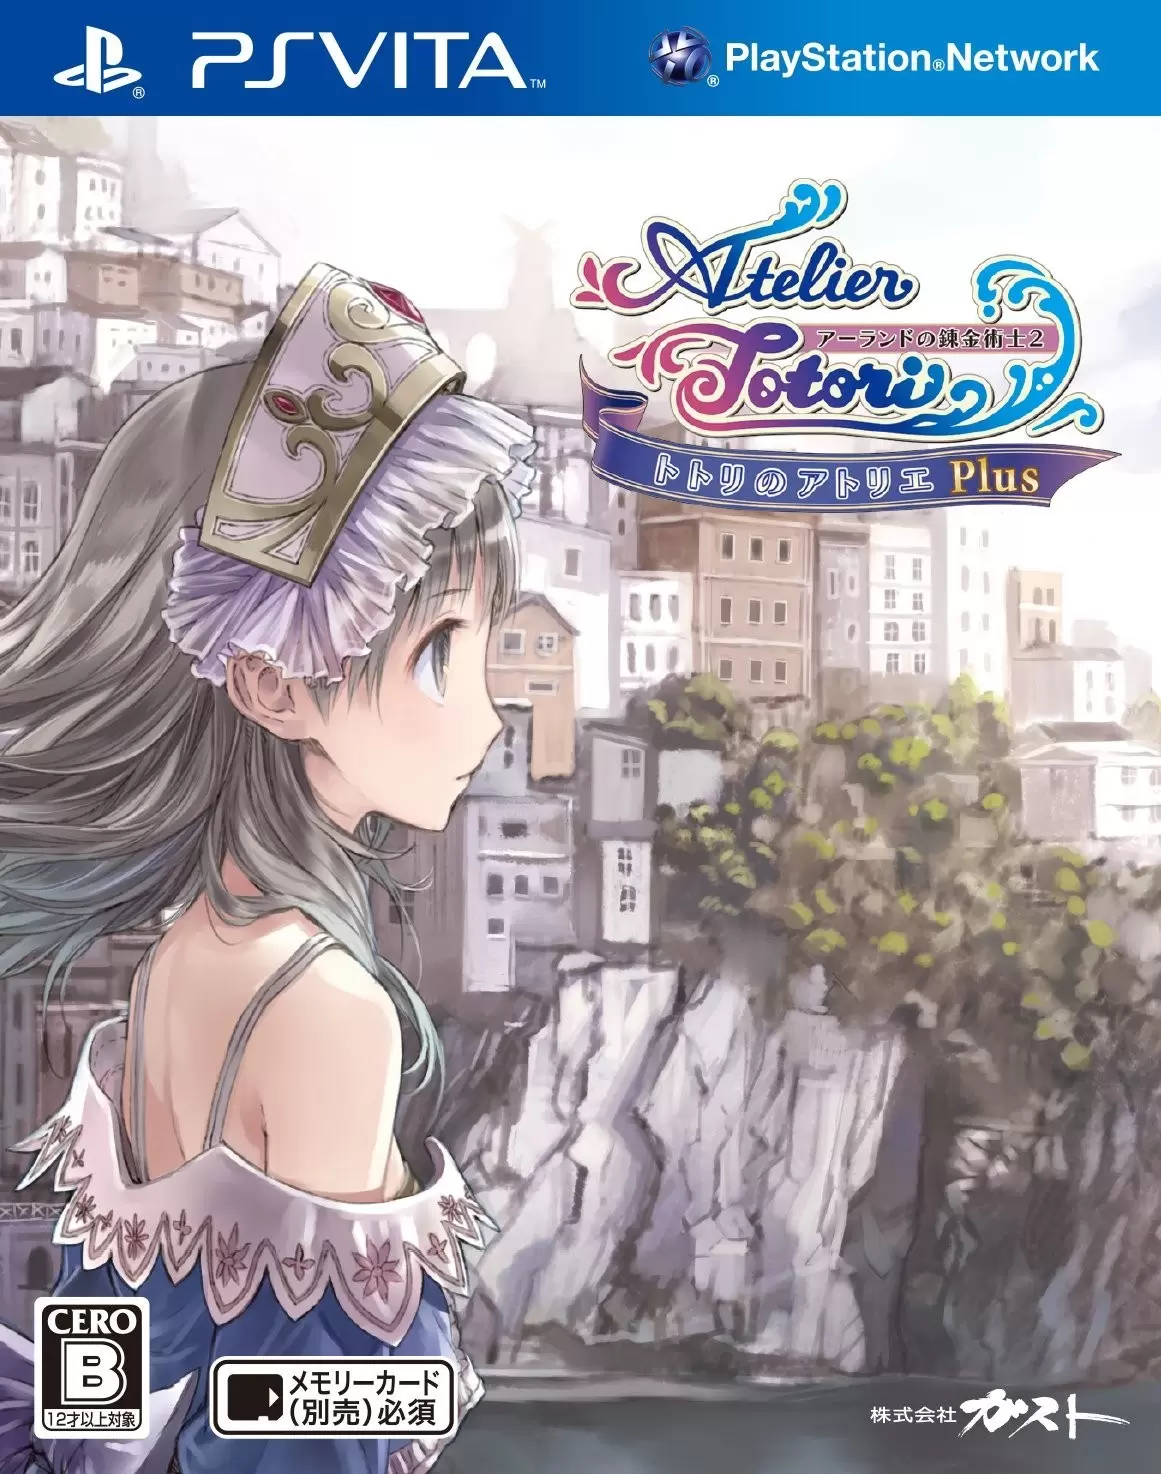 PS Vita Games - Atelier Totori Plus: The Adventurer of Arland